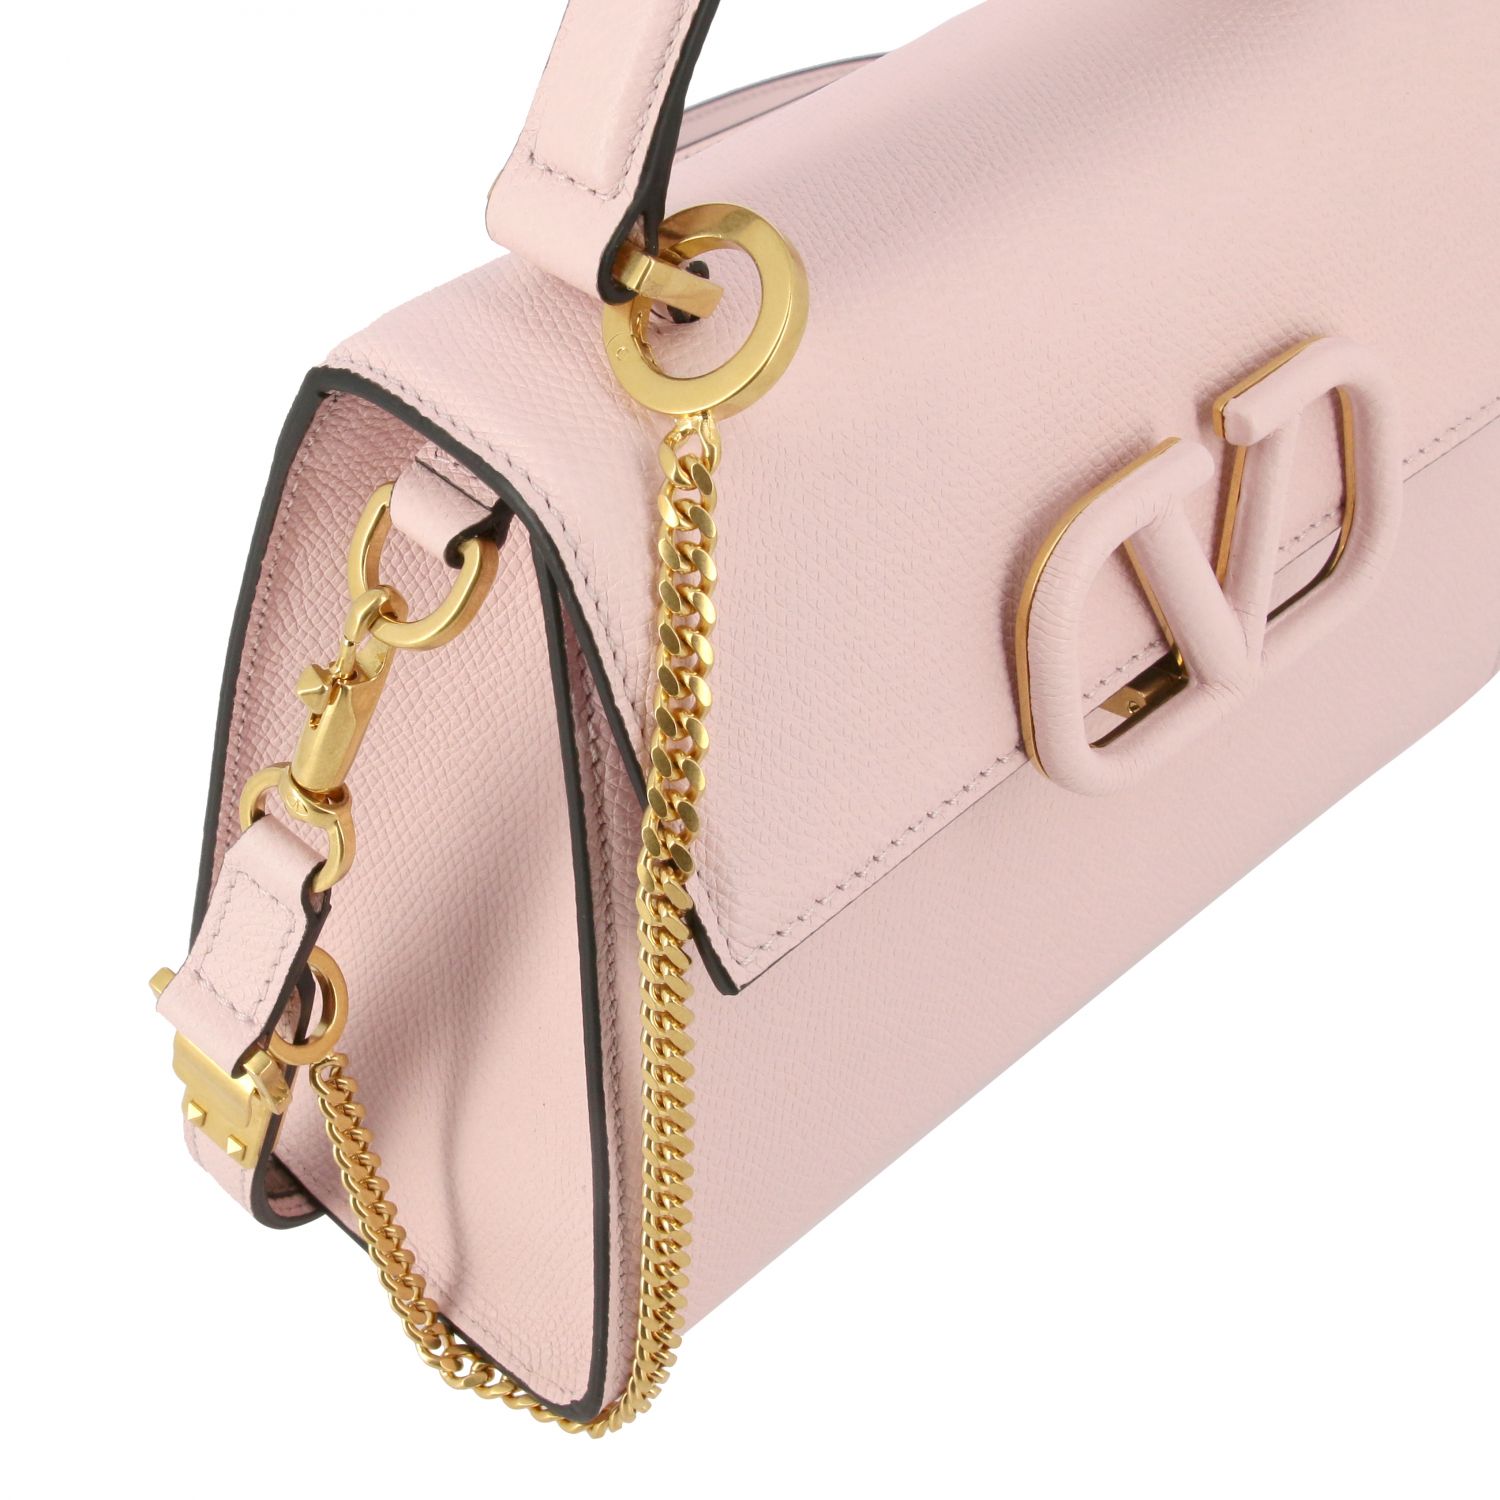 Valentino GHW Vsling Grainy Bag 2way Shoulder Bag Handbag Calfskin Leather  Pink